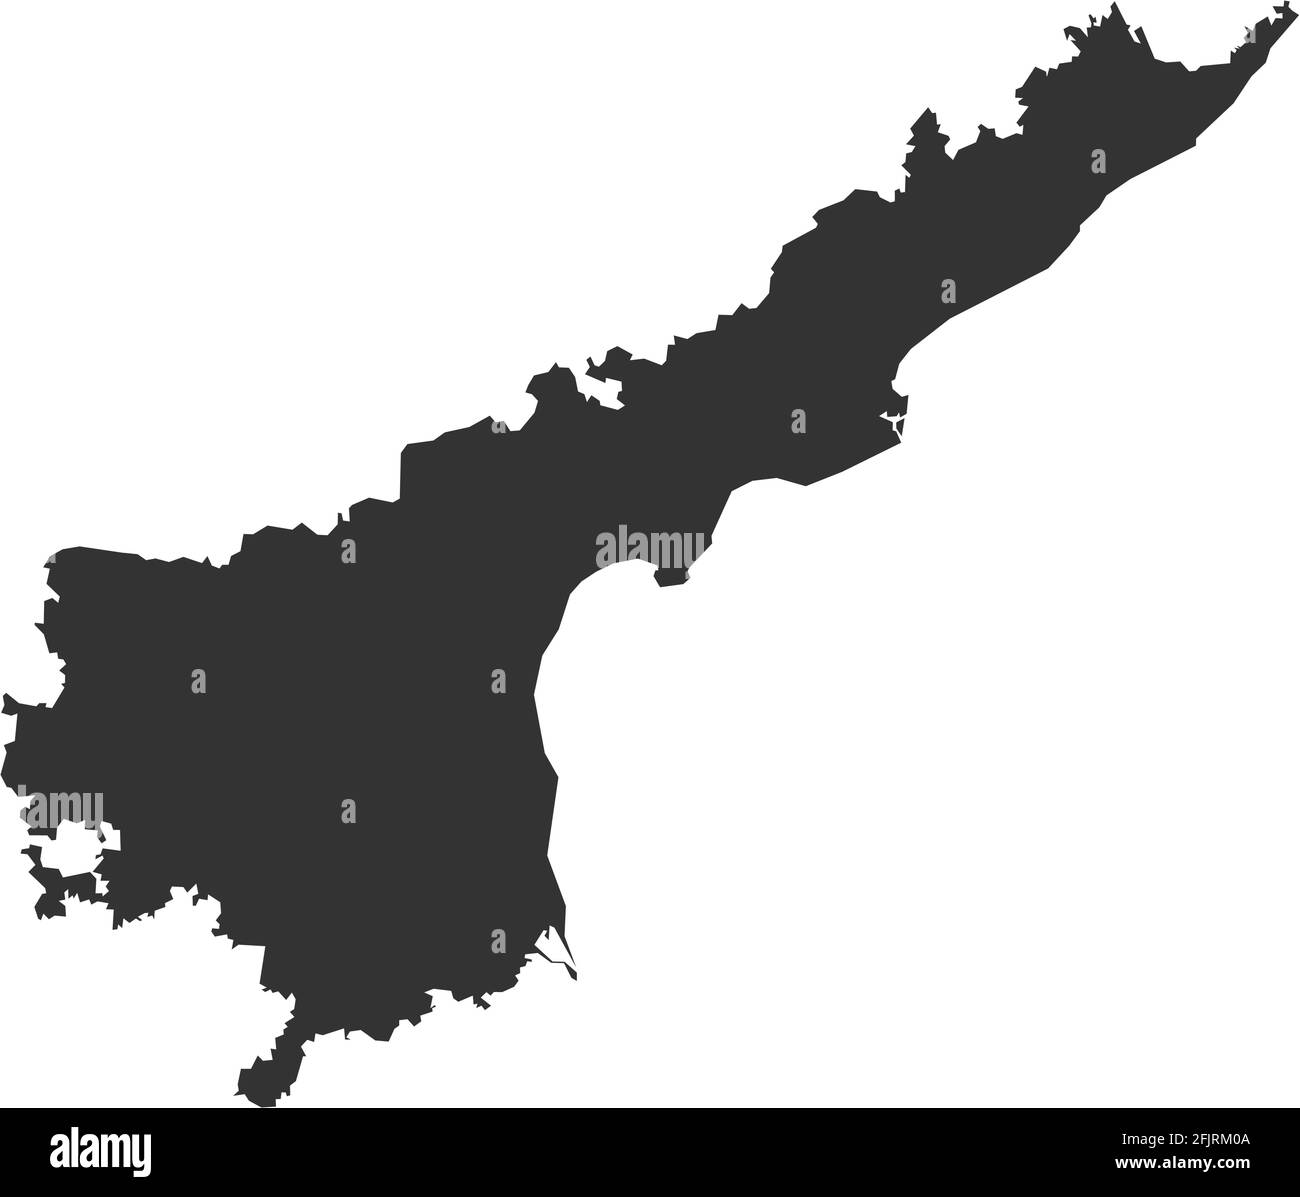 Mappa dello stato indiano di Andhra pradesh. Sfondo grigio scuro. Progettazione grafica dei concetti aziendali. Illustrazione Vettoriale